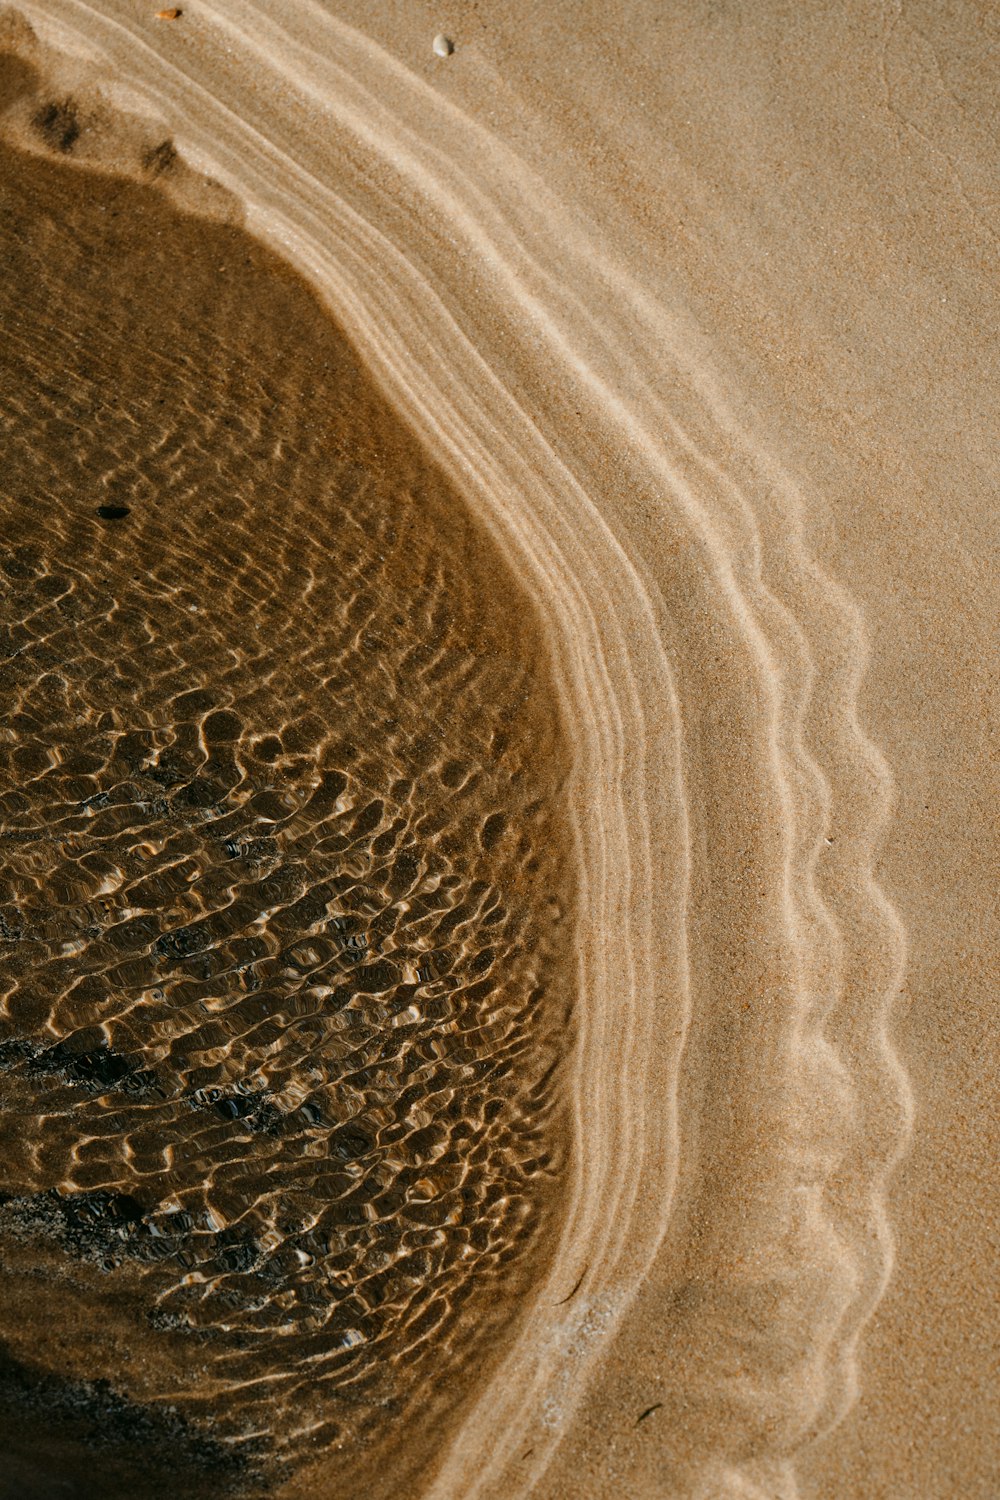 日中は水が溜まった茶色の砂浜